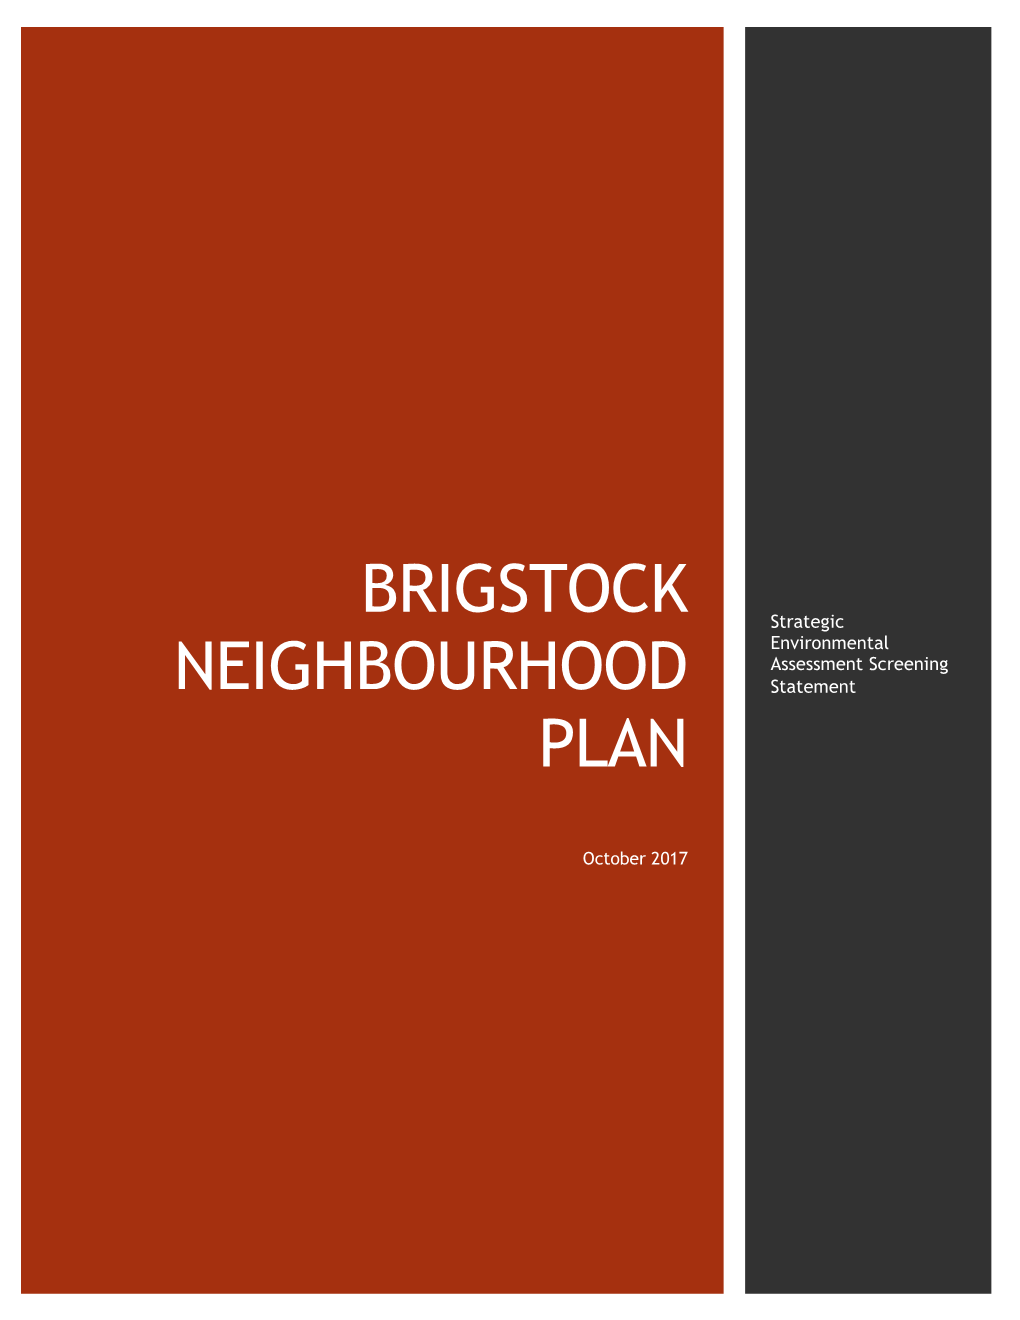 Brigstock Neighbourhood Plan Contact Point: